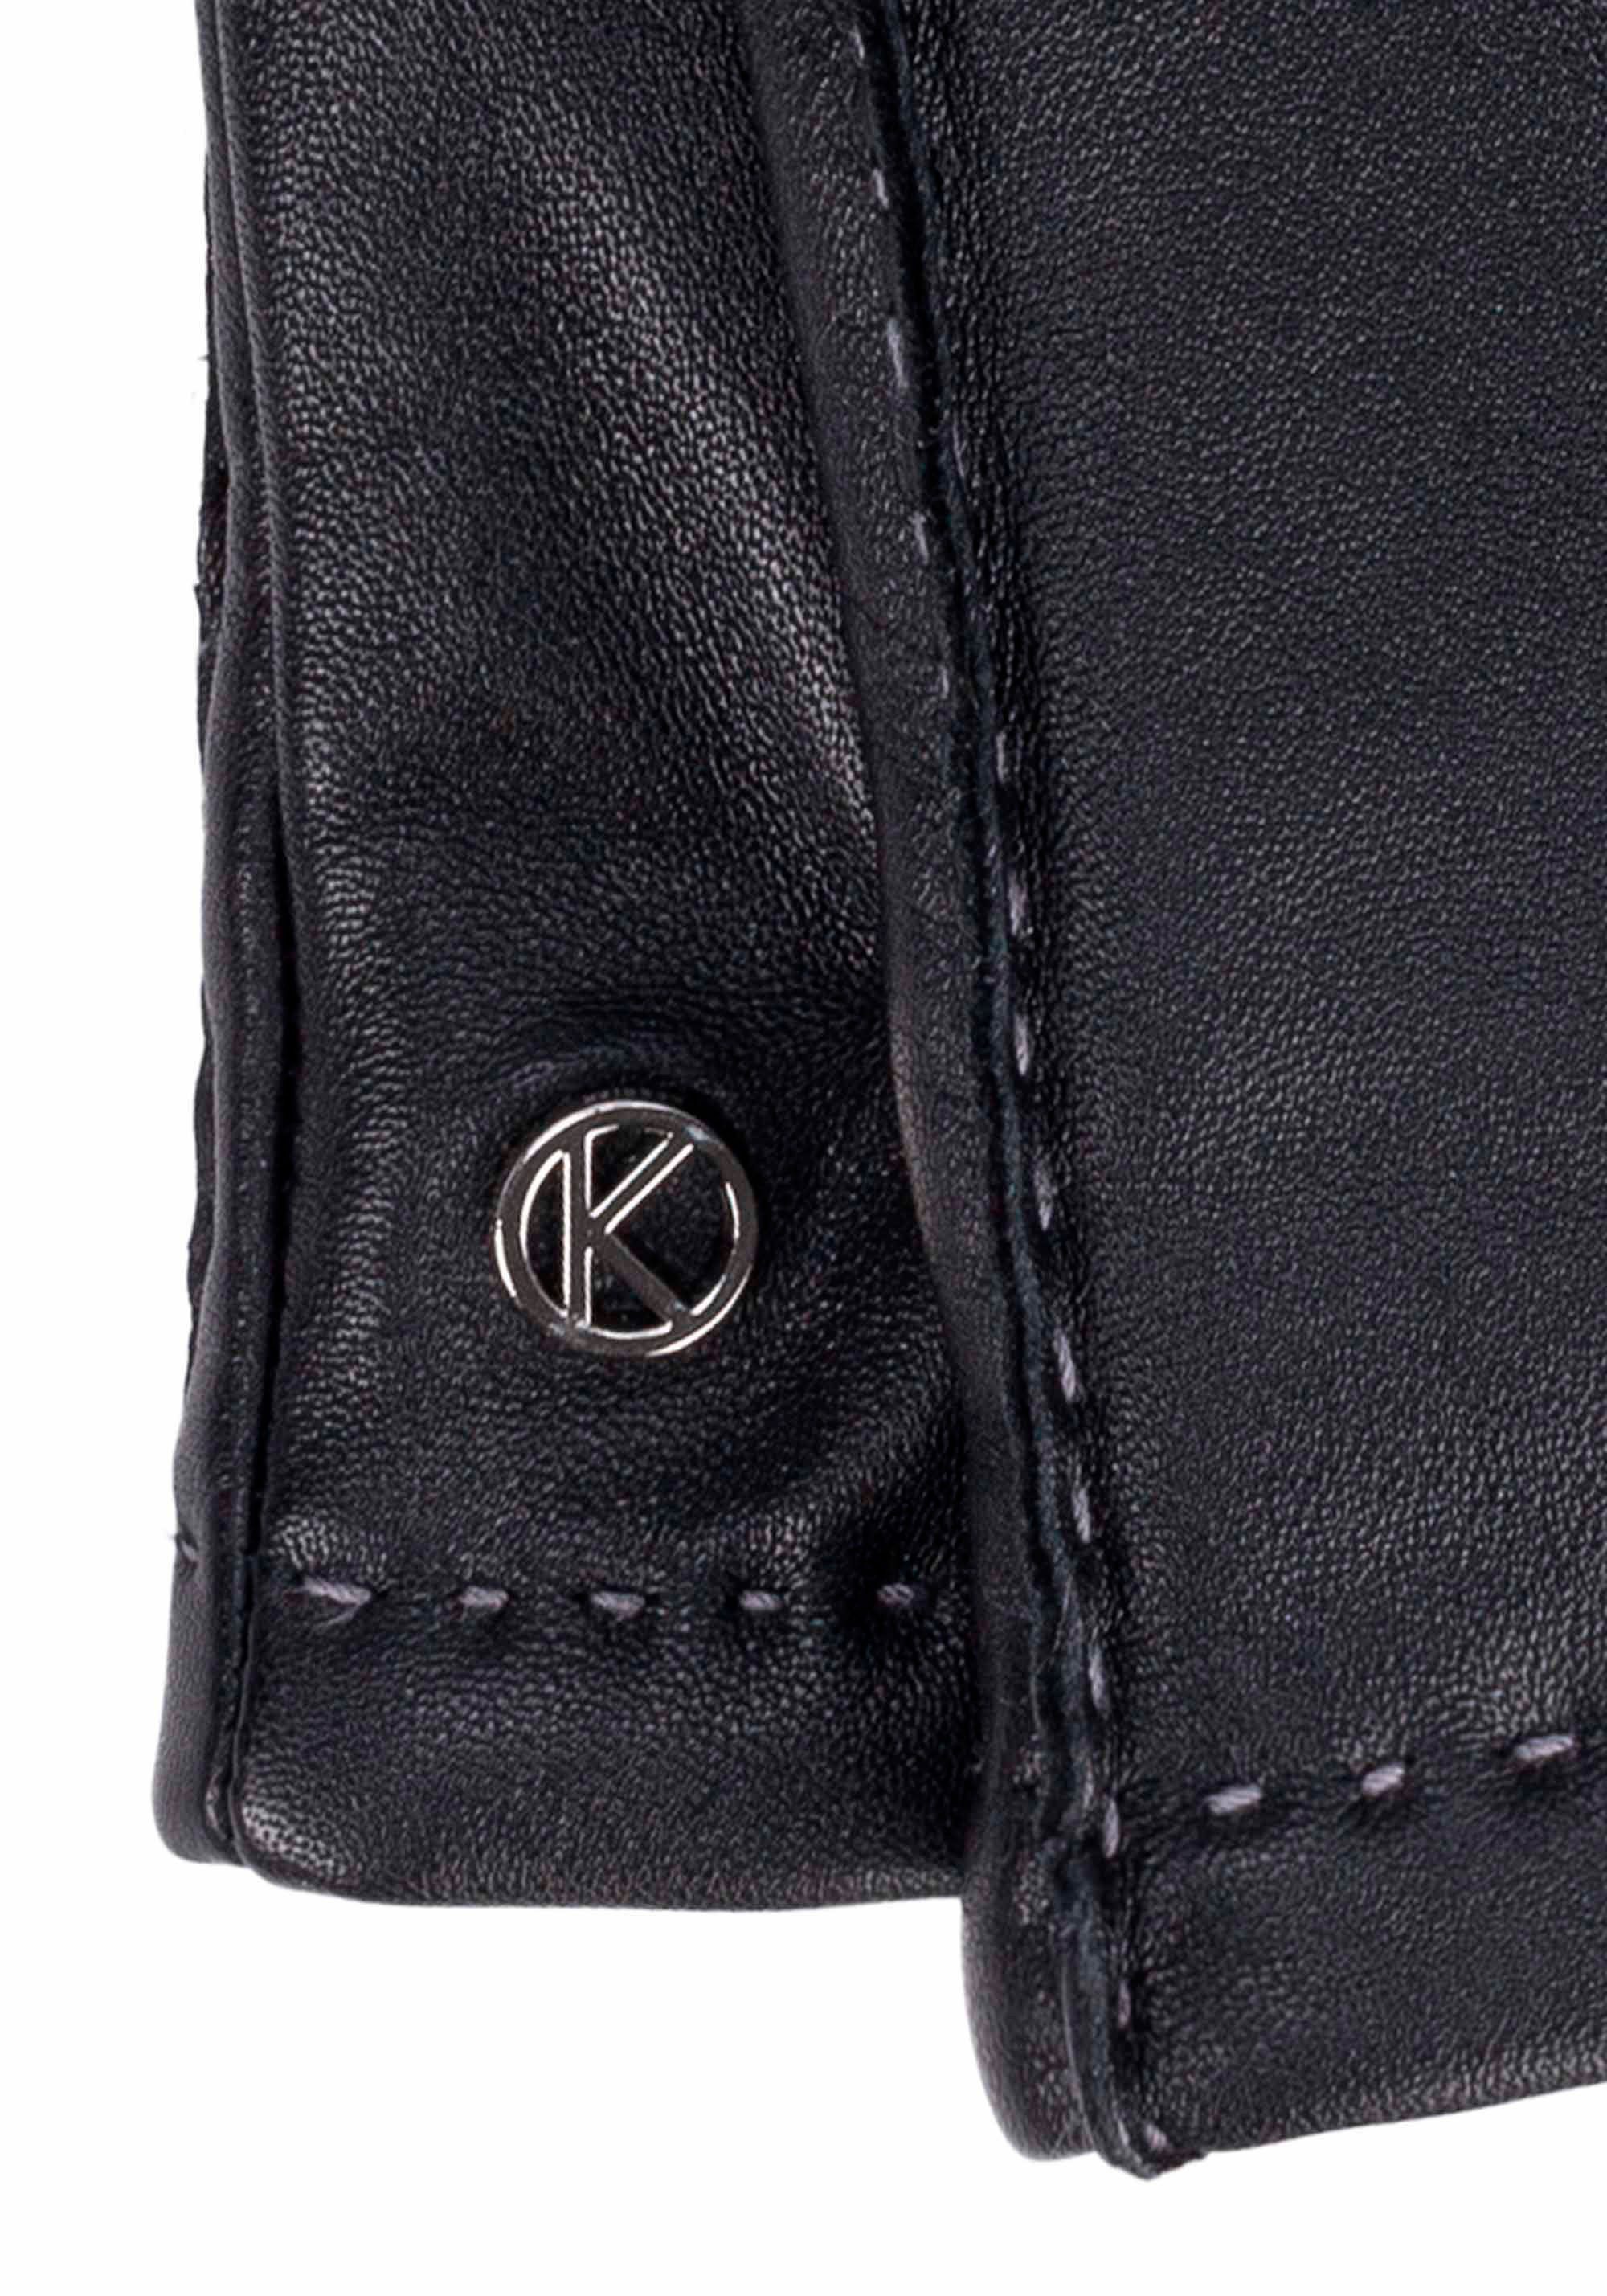 Oberflächen Touchfunktion KESSLER Millie black Smart- Lederhandschuhe für